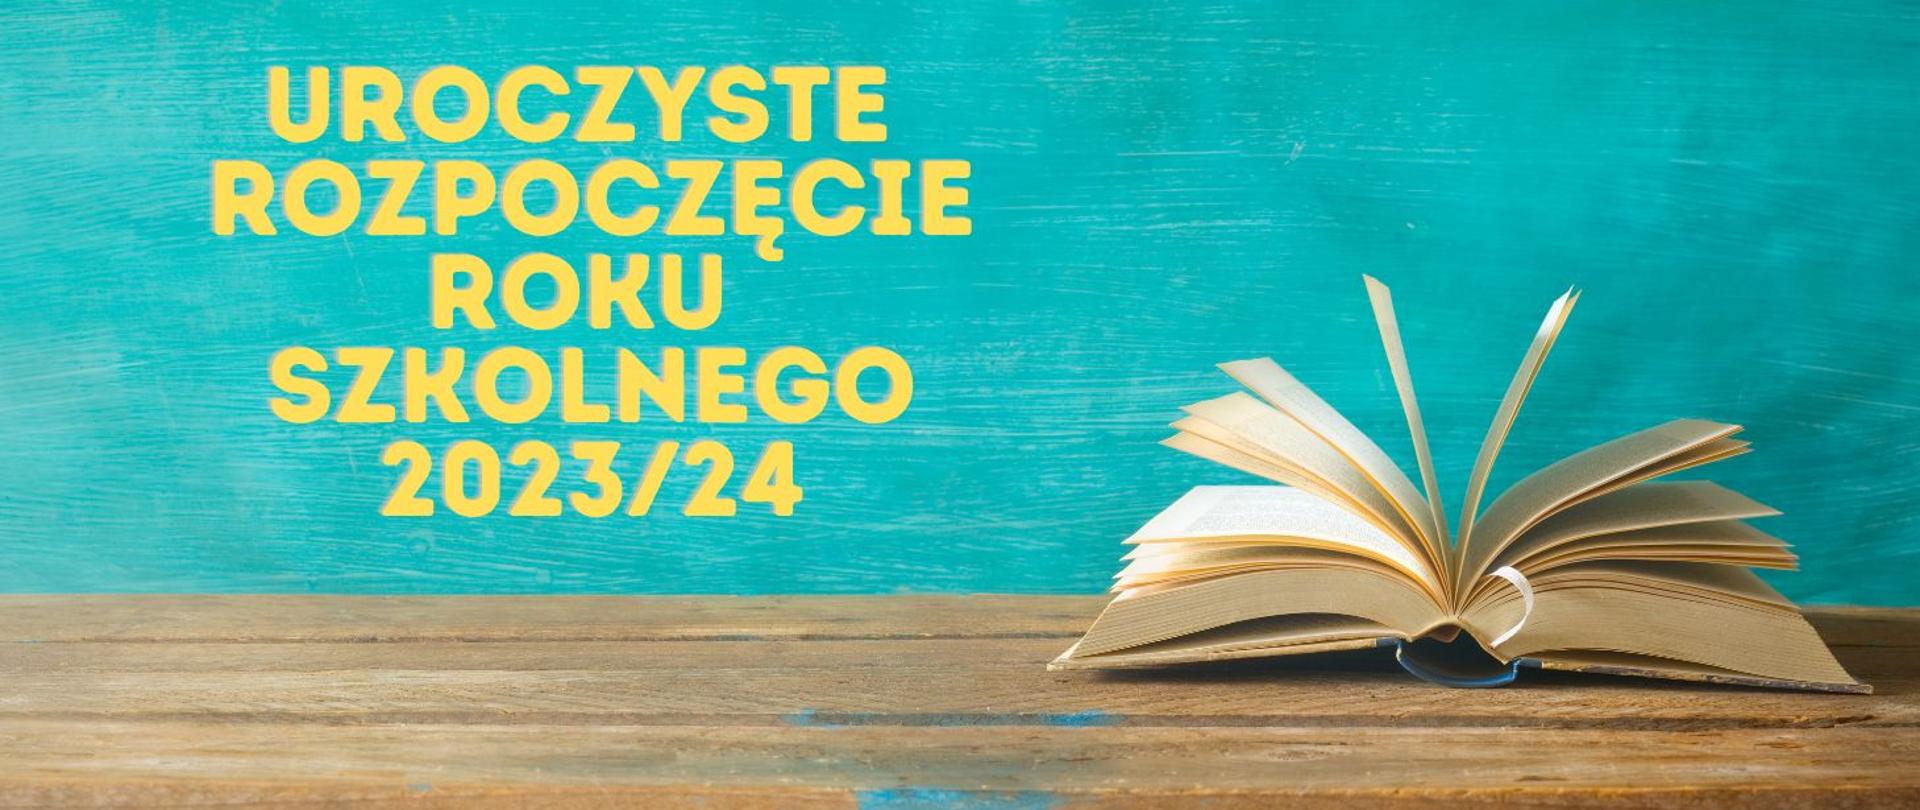 Plakat z okazji uroczystego rozpoczęcia roku szkolnego 2023-2024. Po lewej stronie otwarta książka na drewnianym blacie, po prawej stronie żółte litery. 